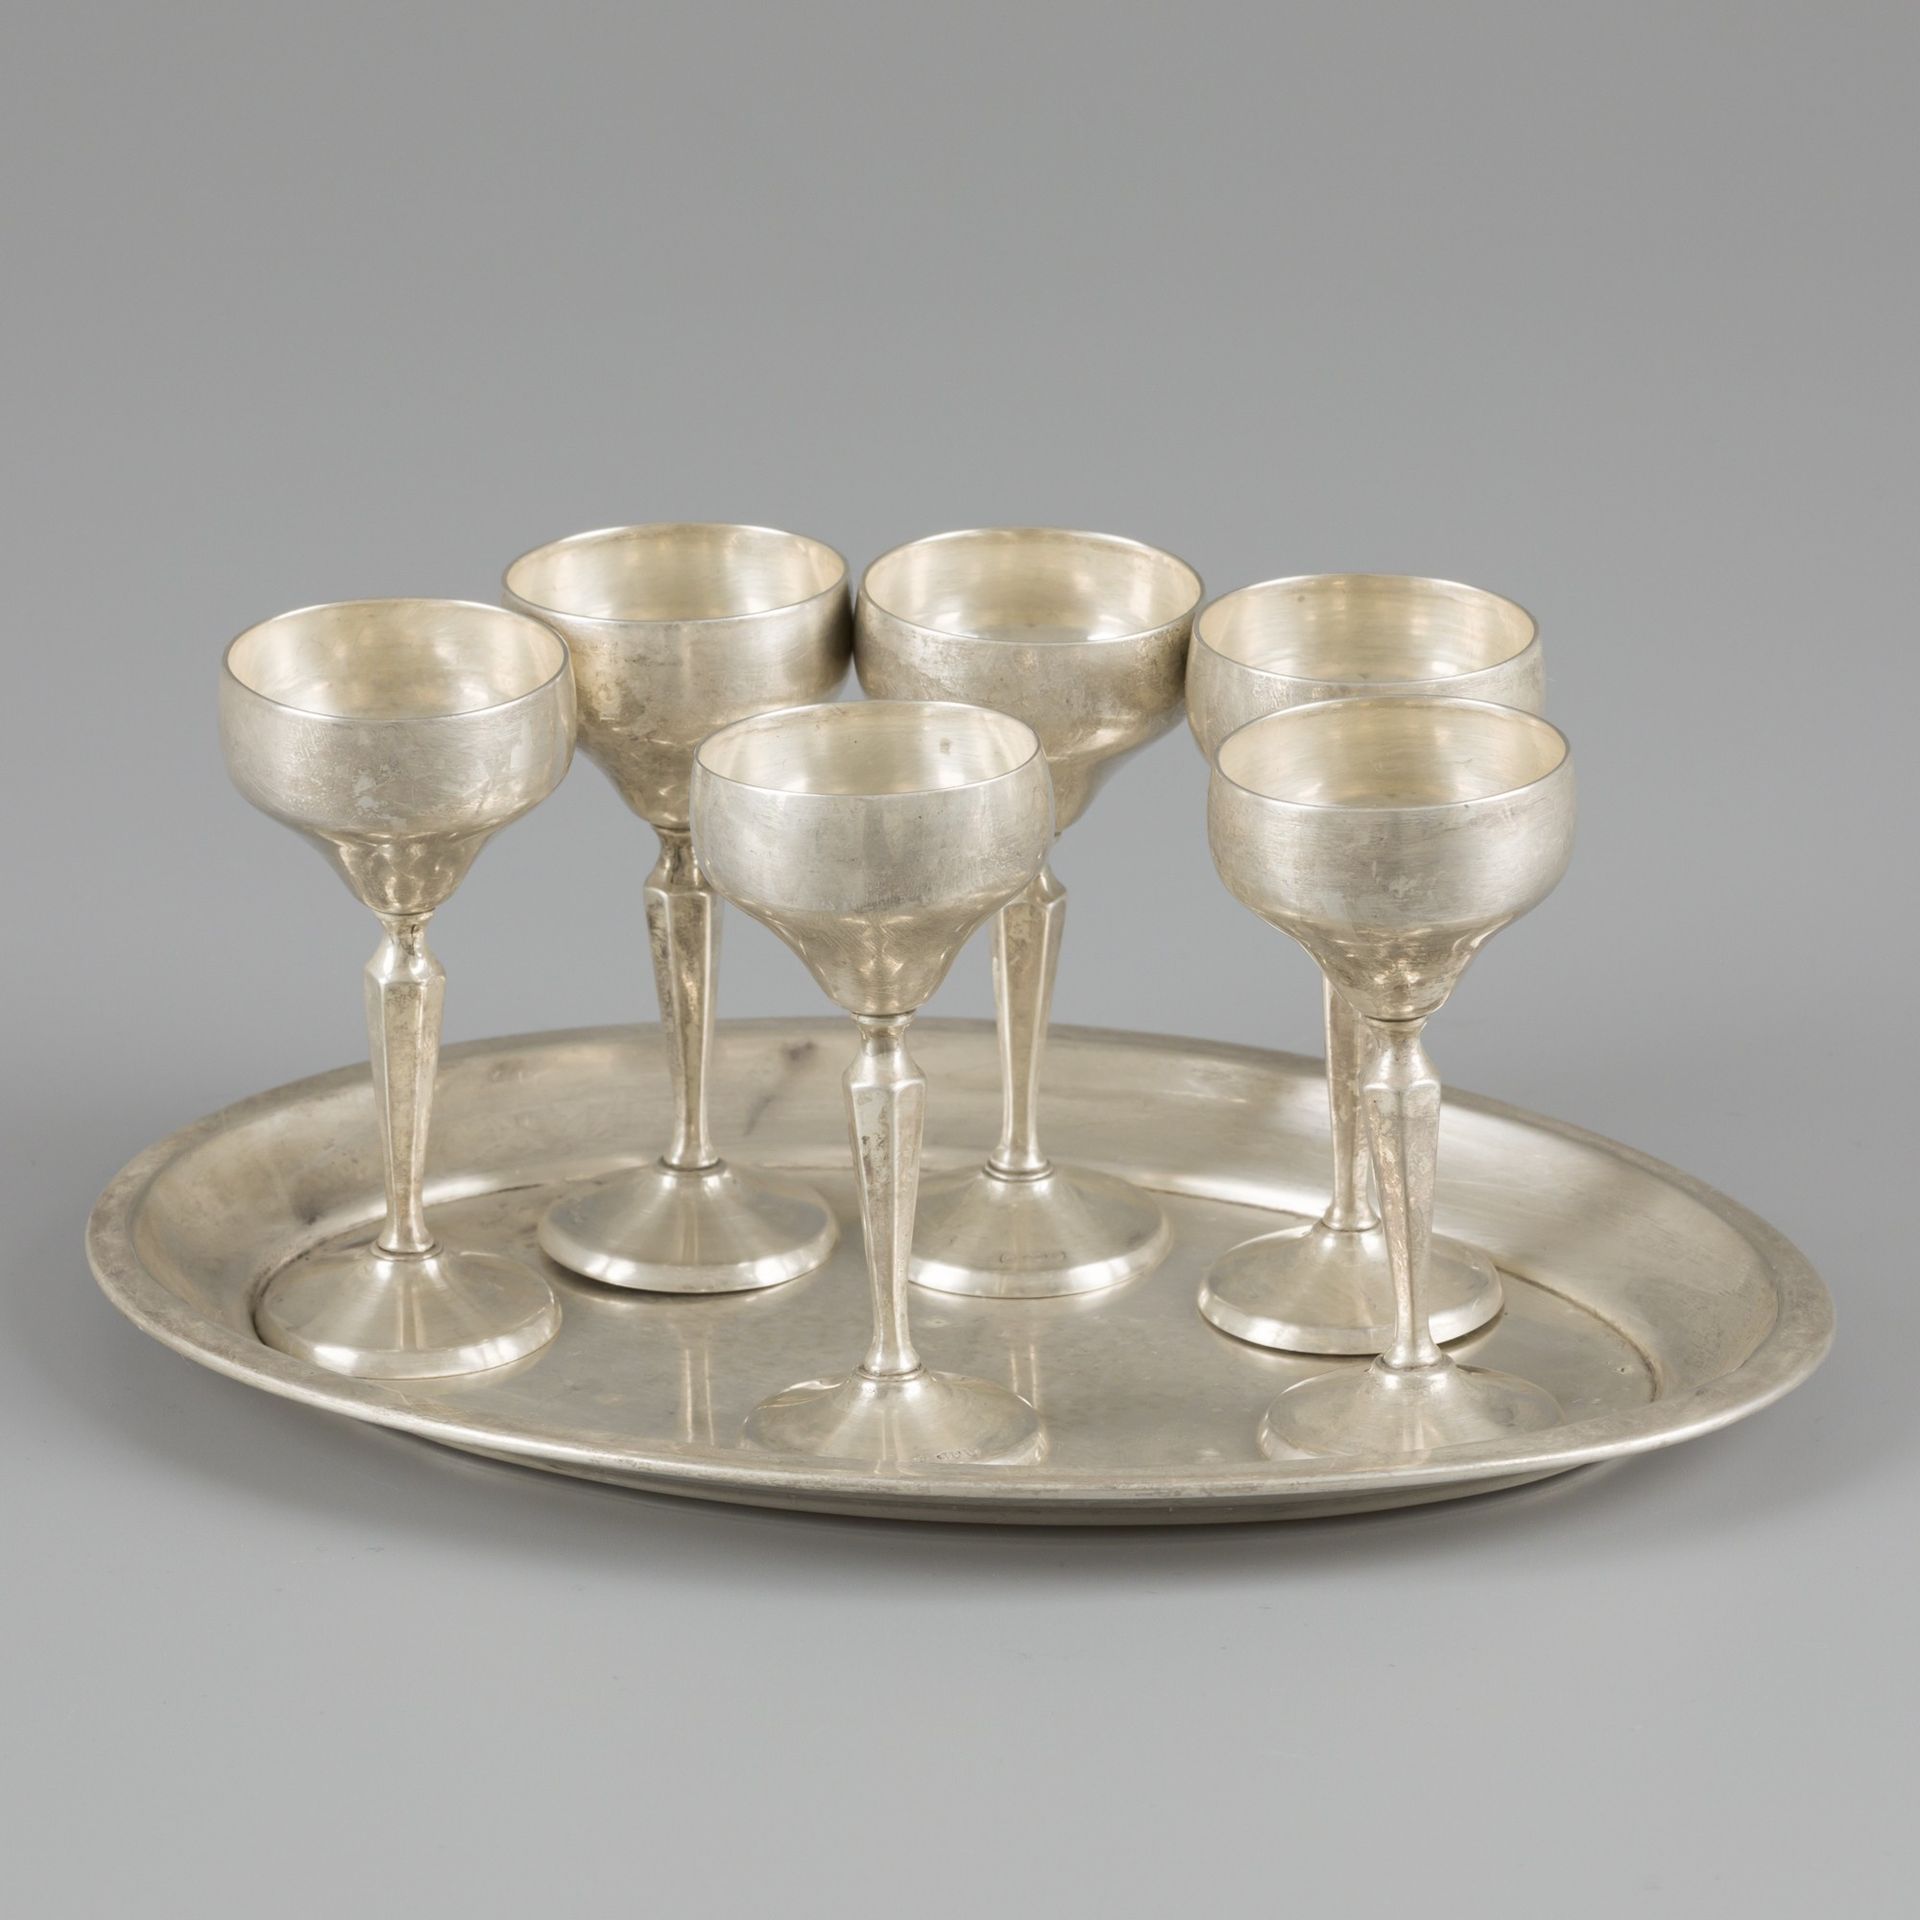 Serving tray with silver glasses. Vassoio ovale con bordo ripiegato, con 6 bicch&hellip;